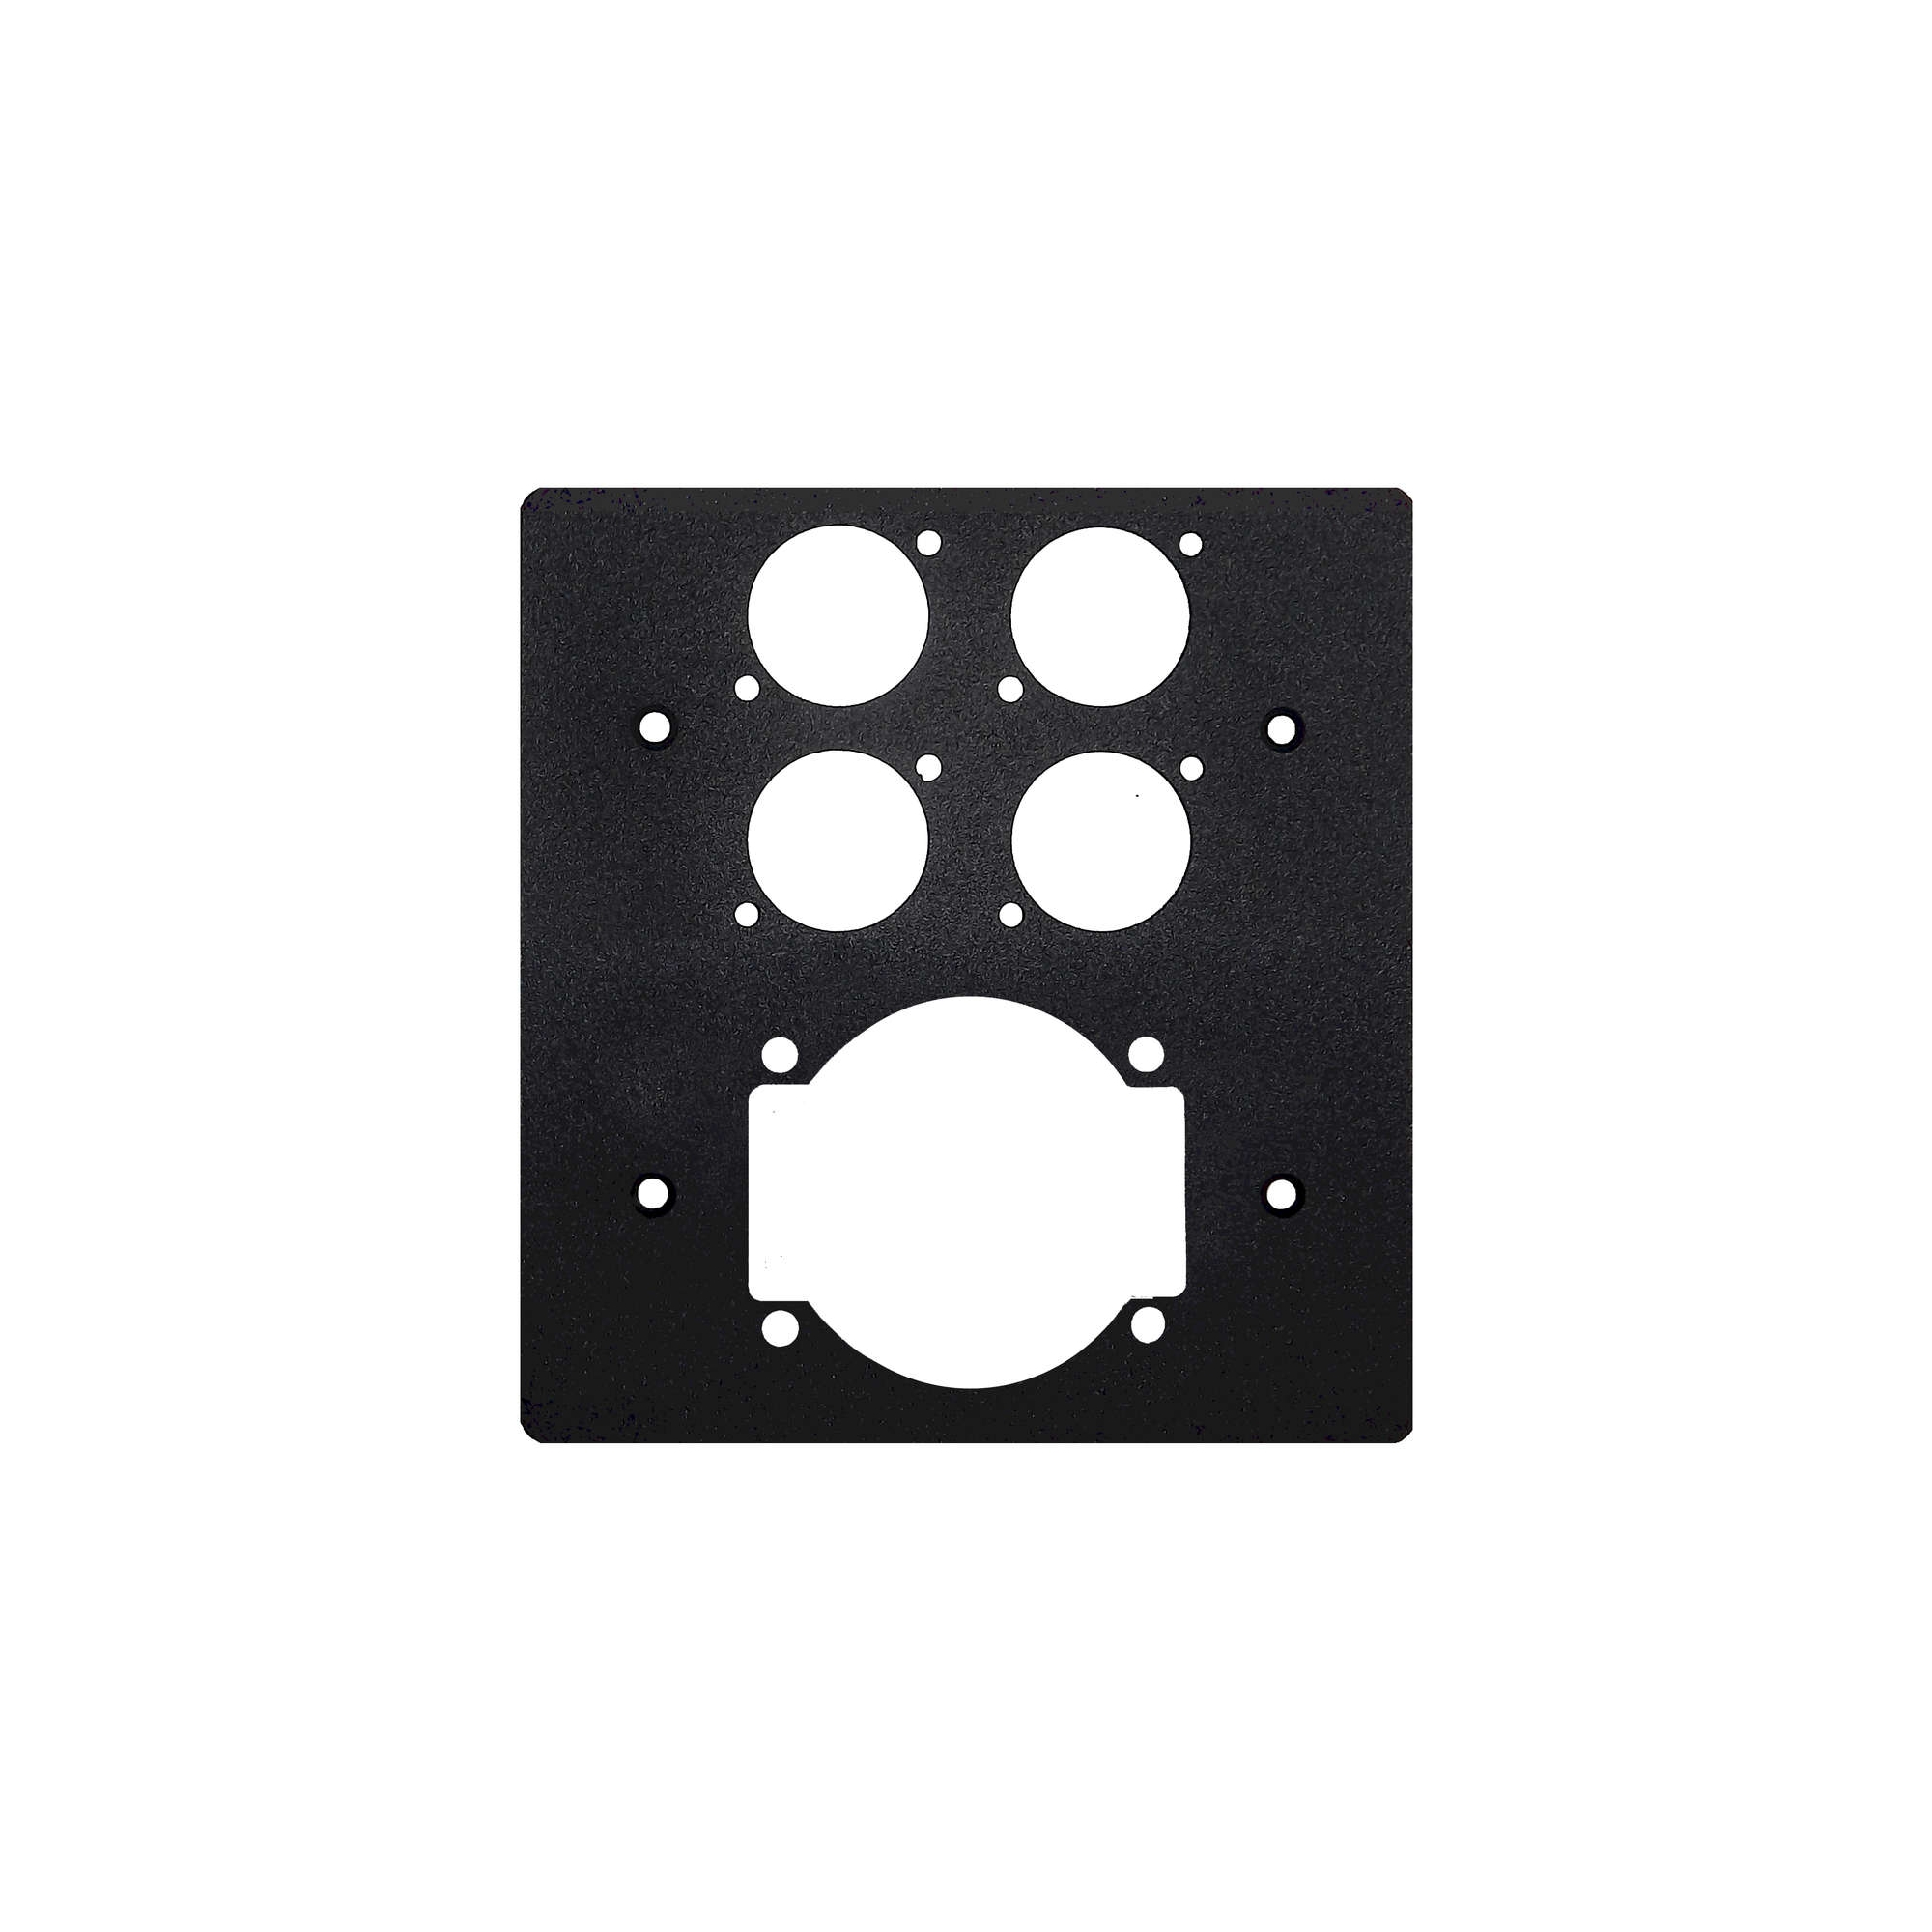 Placca nera per scatola 506 per 4 Connettori D-type + 1 Presa universale Vimar 1299n